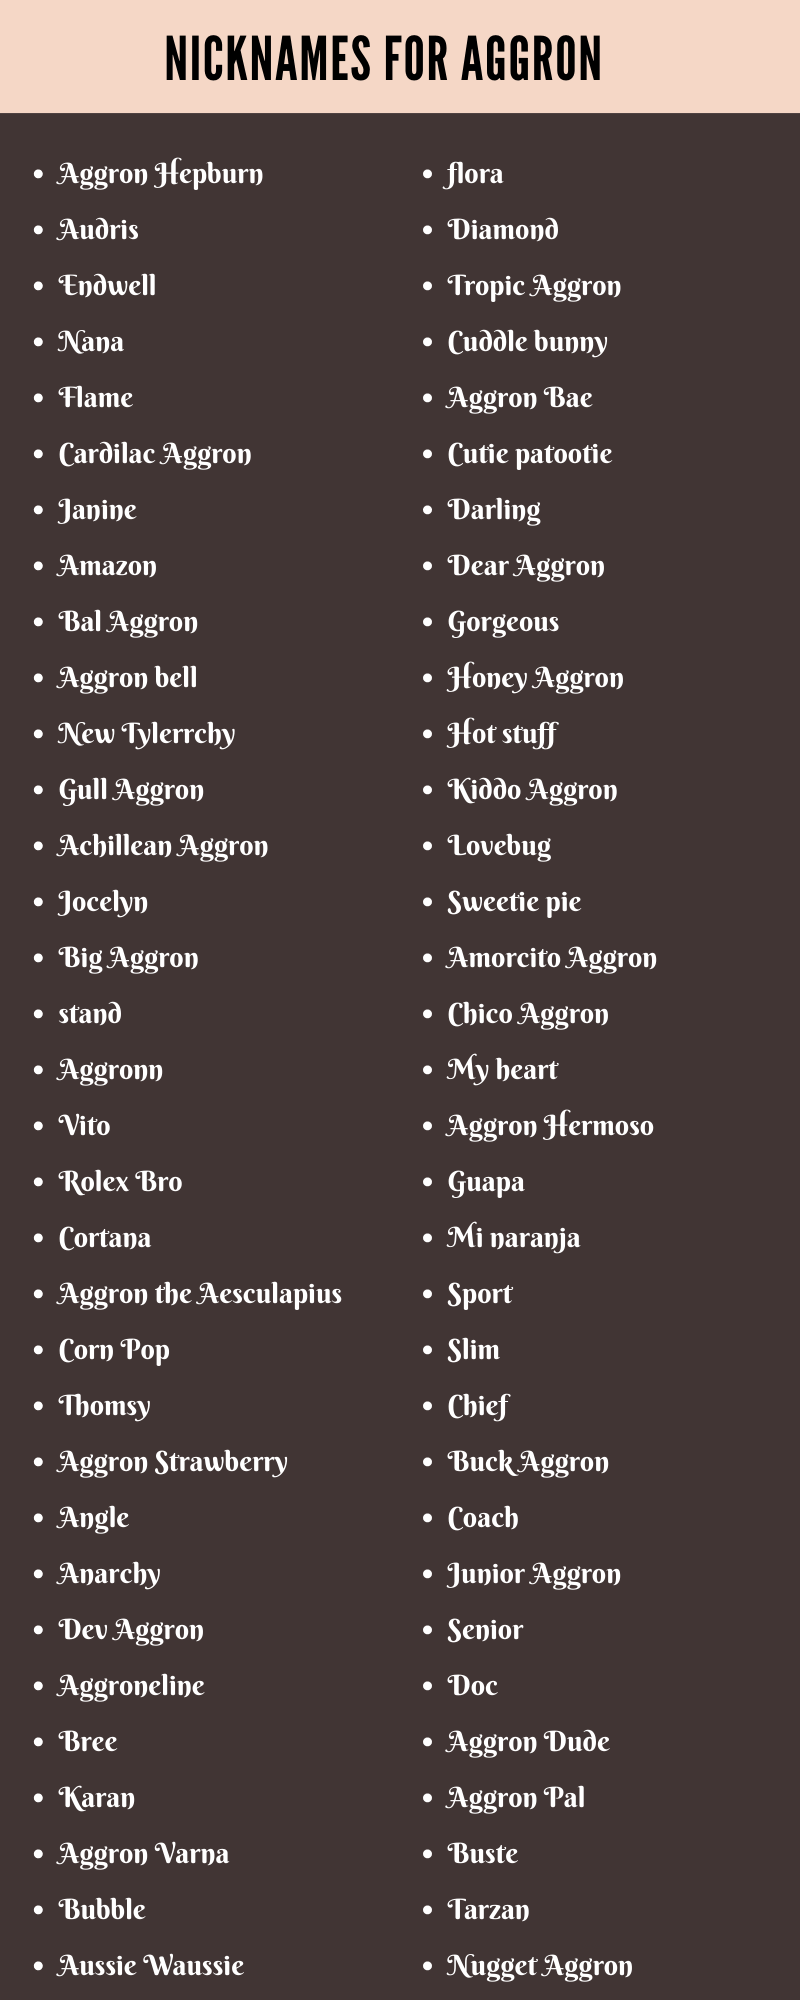 Nicknames For Aggron